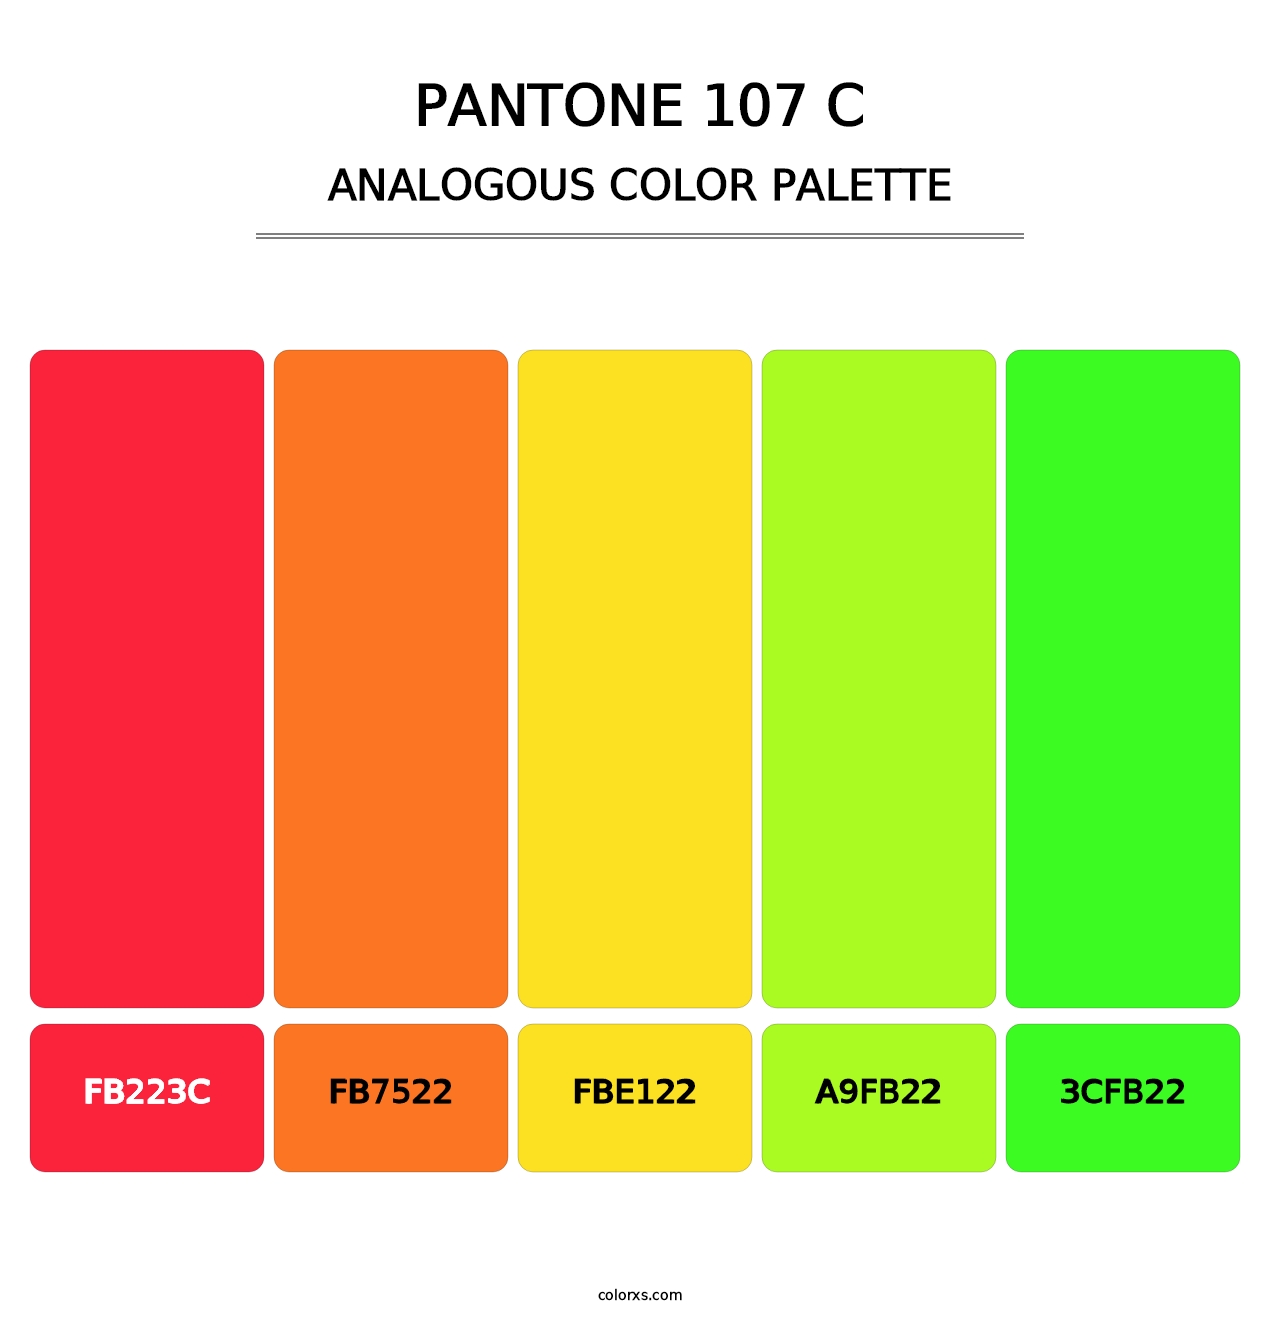 PANTONE 107 C - Analogous Color Palette